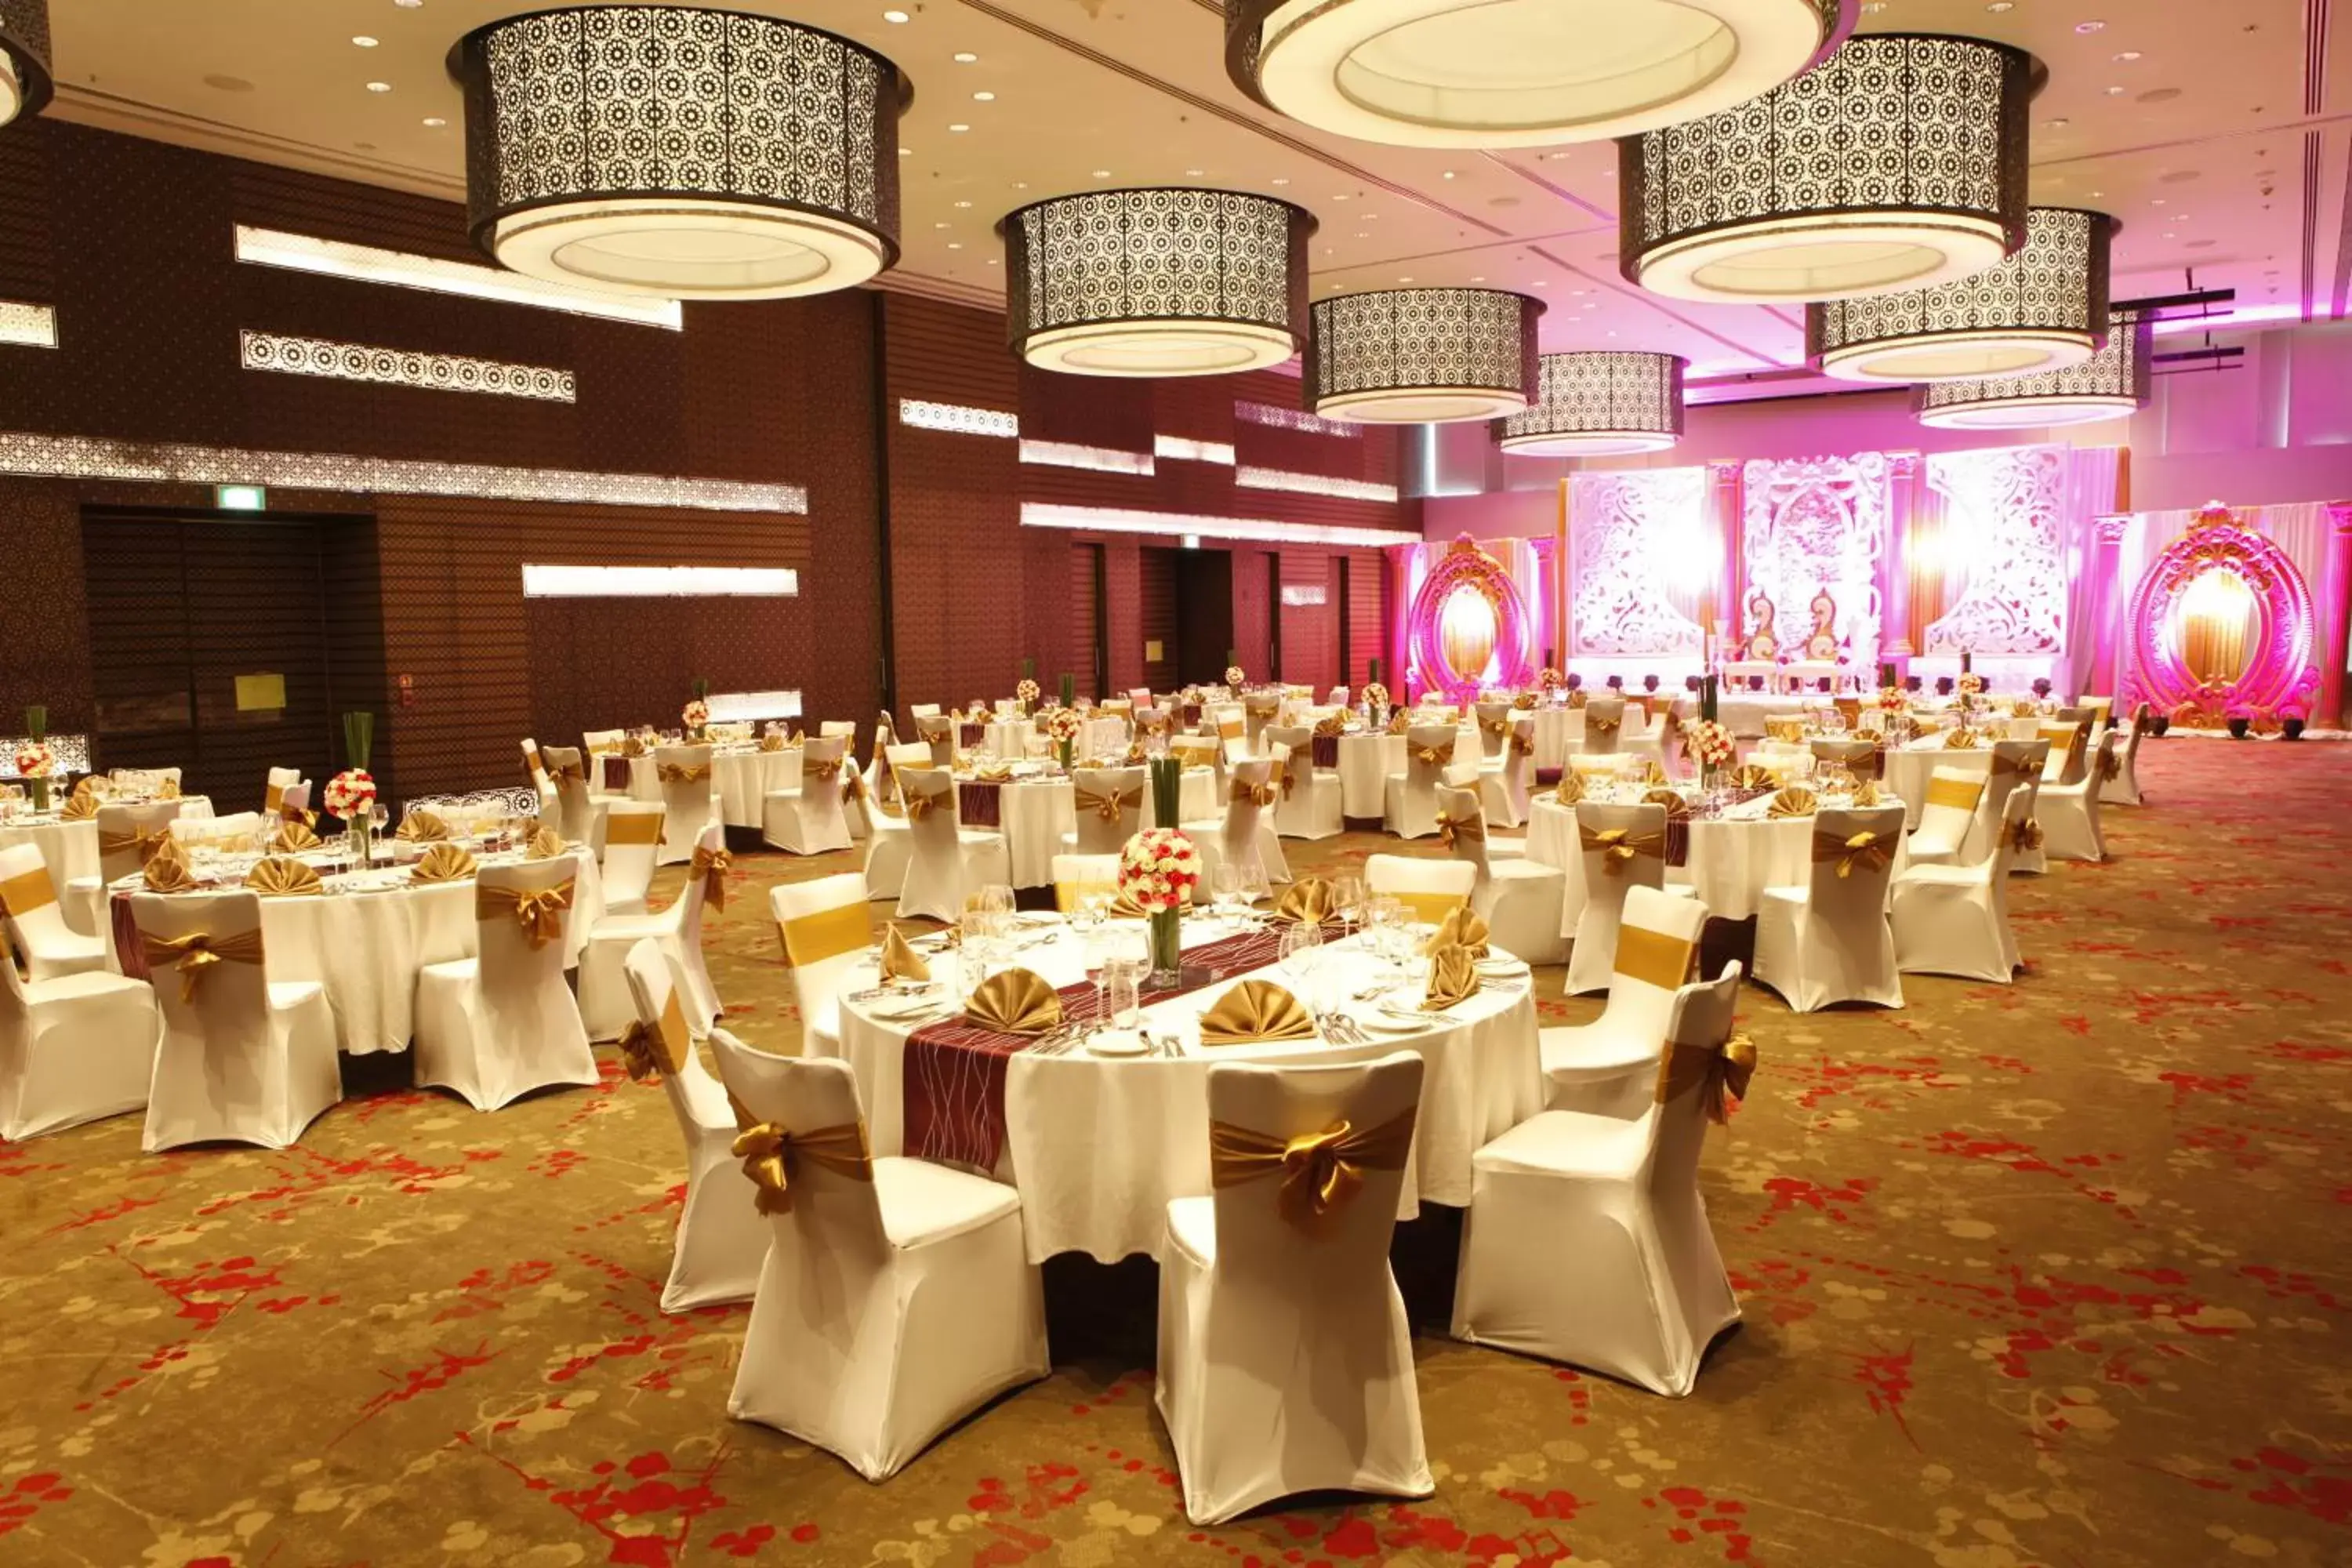 Banquet/Function facilities, Banquet Facilities in Novotel Pune Viman Nagar Road